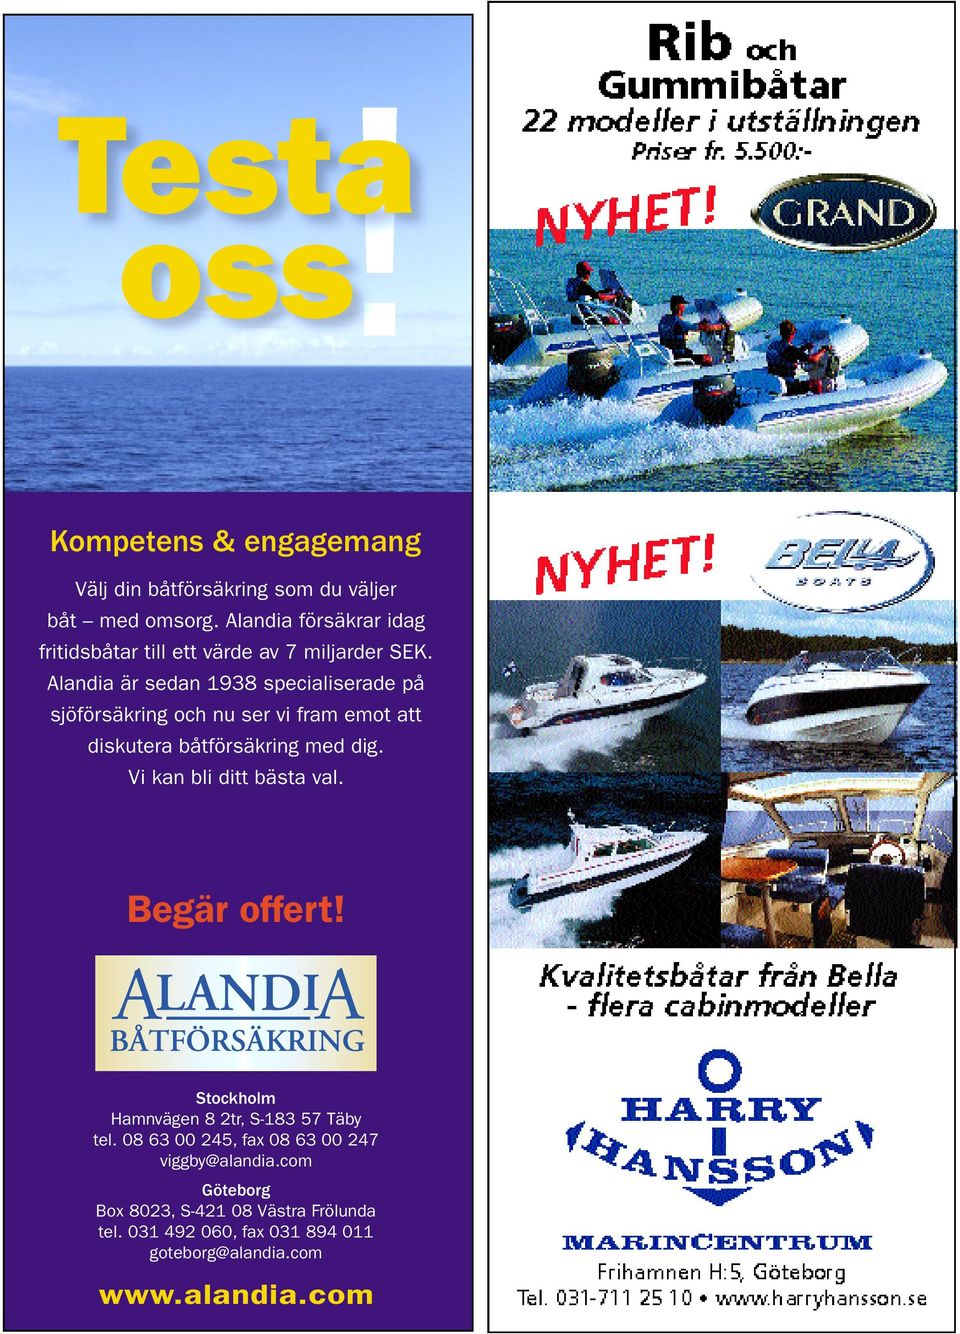 Alandia är sedan 1938 specialiserade på sjöförsäkring och nu ser vi fram emot att diskutera båtförsäkring med dig.